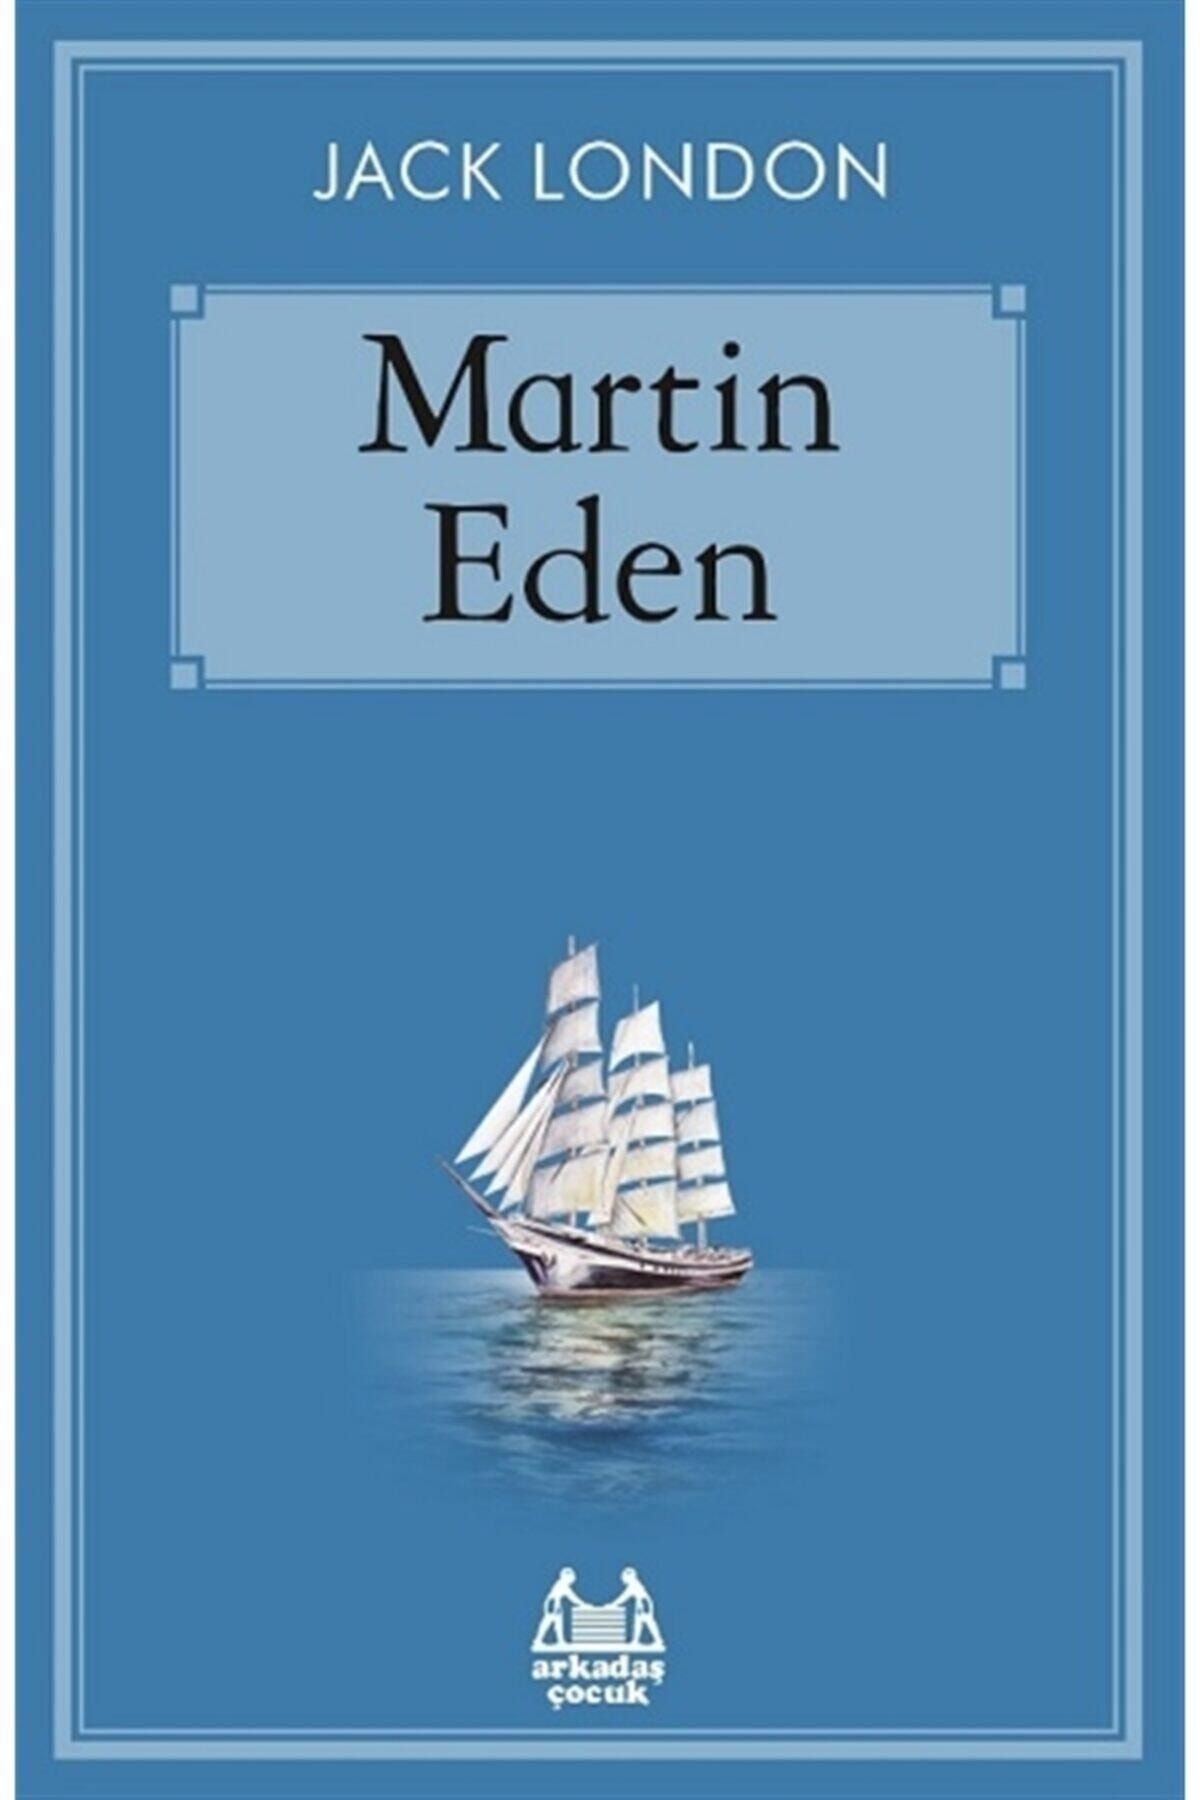 Arkadaş Yayıncılık Martin Eden - Jack London 9786057921550